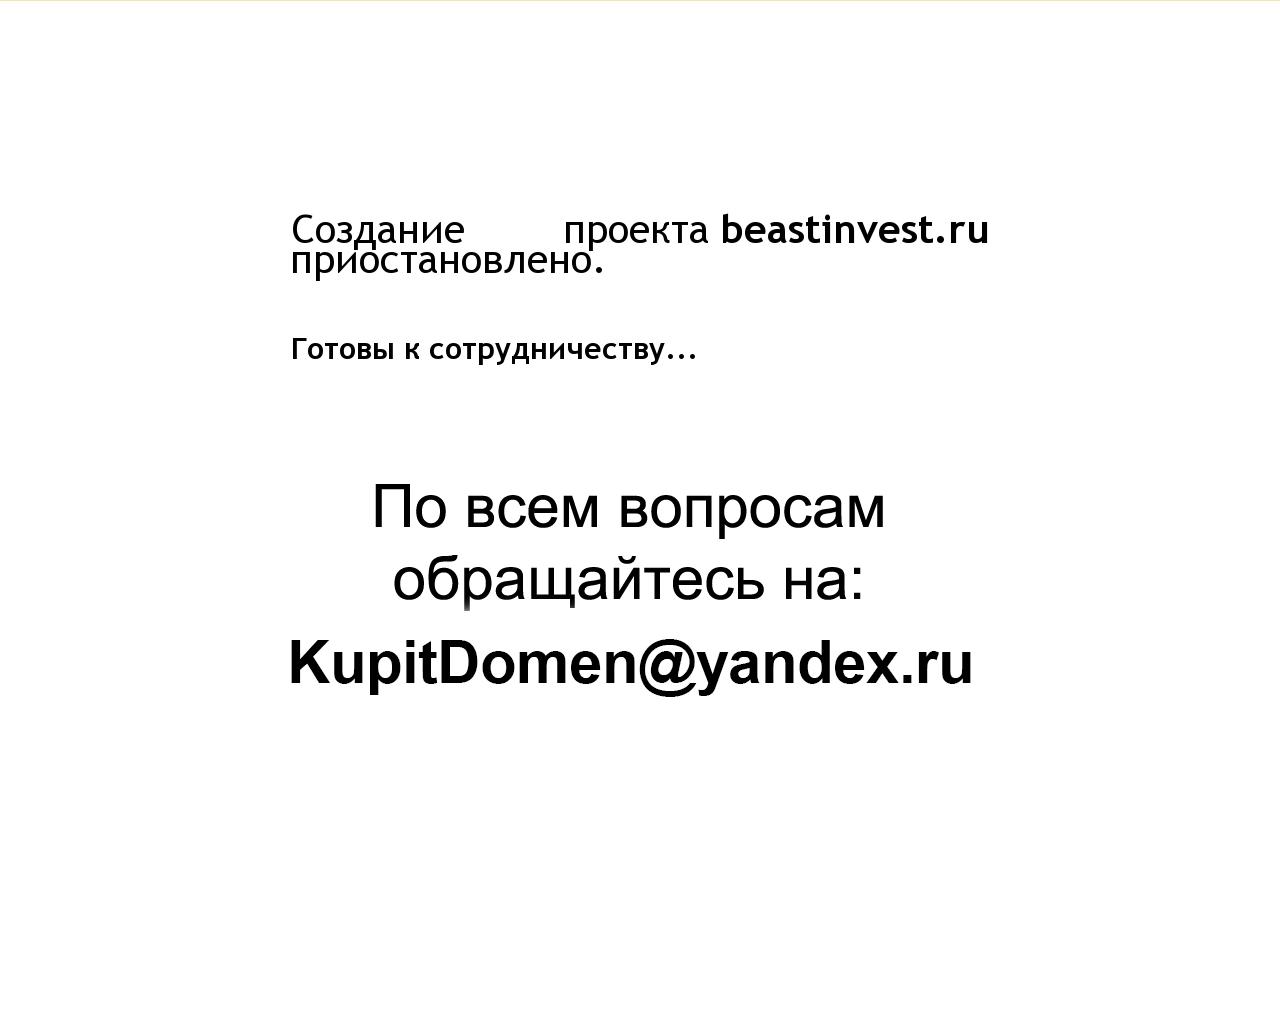 Изображение сайта beastinvest.ru в разрешении 1280x1024